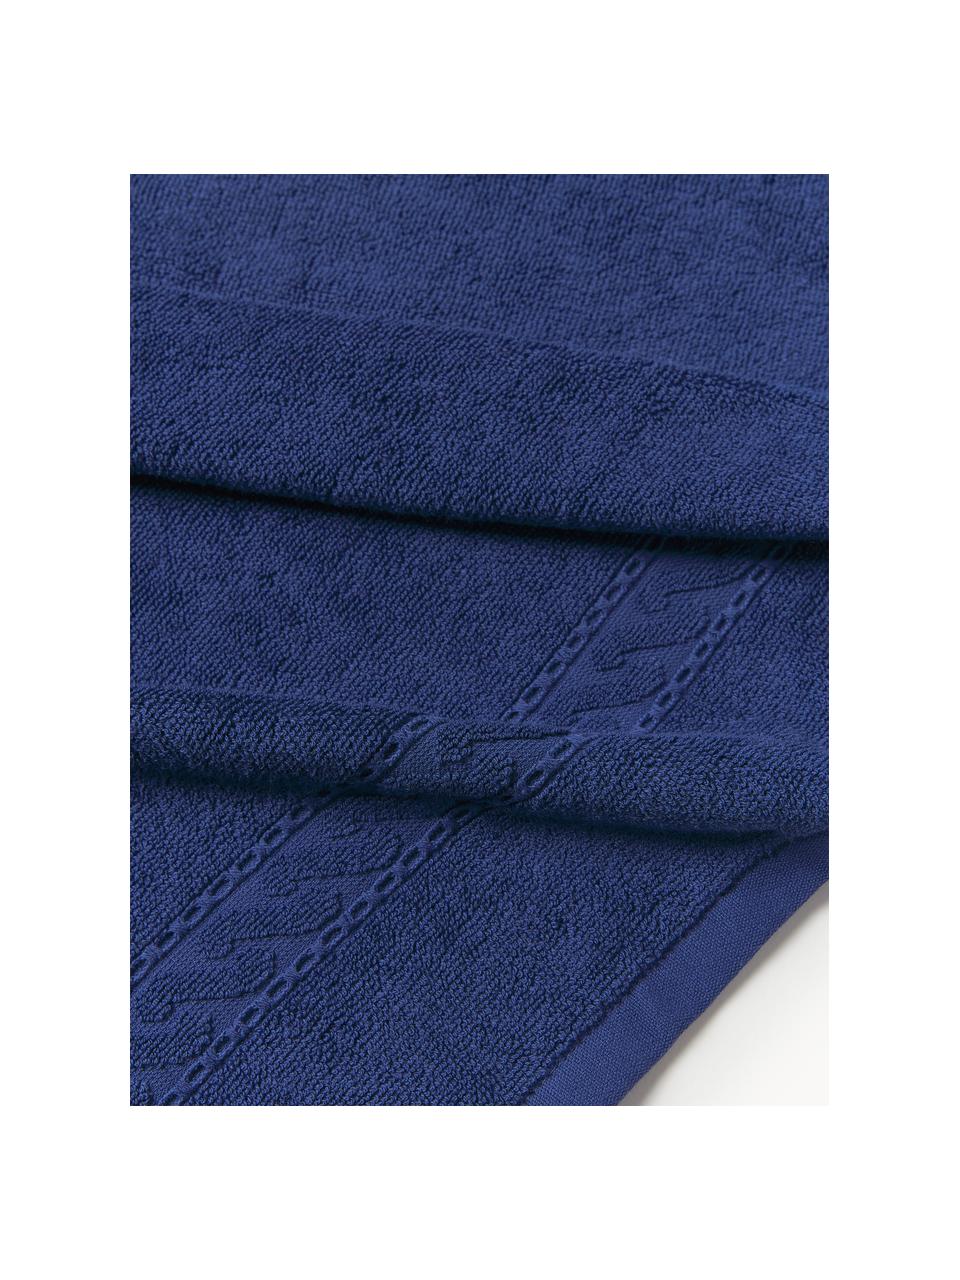 Ręcznik Cordelia, różne rozmiary, Ciemny niebieski, Ręcznik kąpielowy, S 70 x D 140 cm